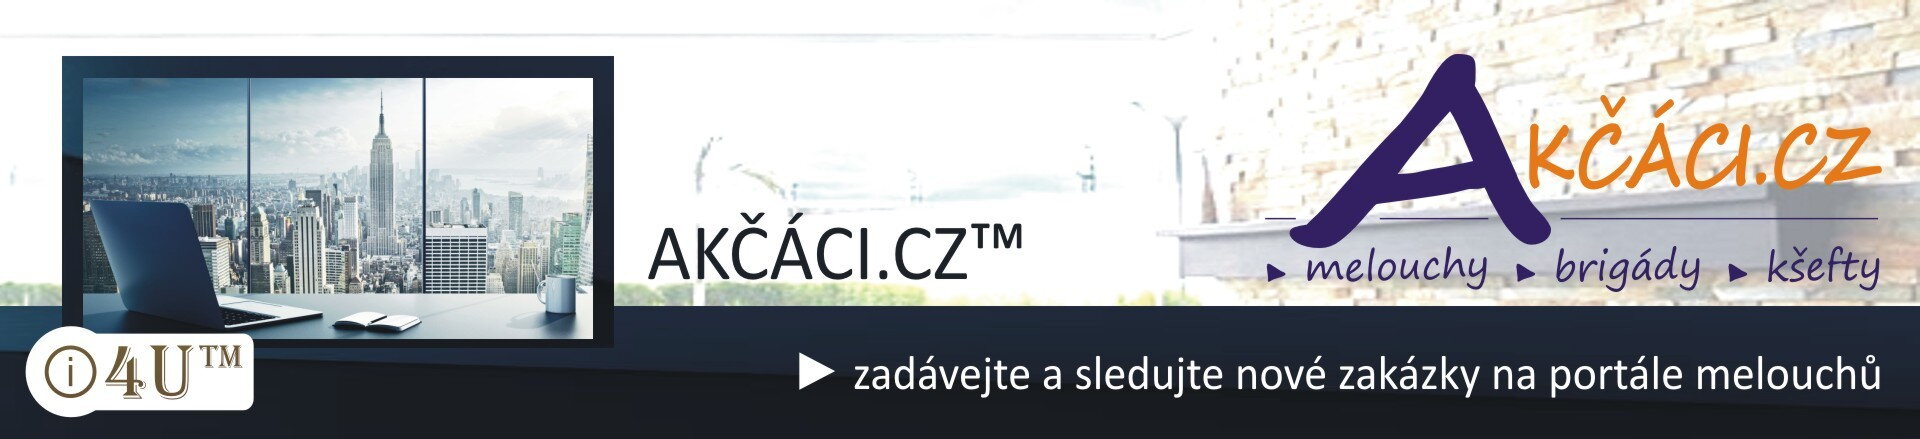 Akčáci.cz